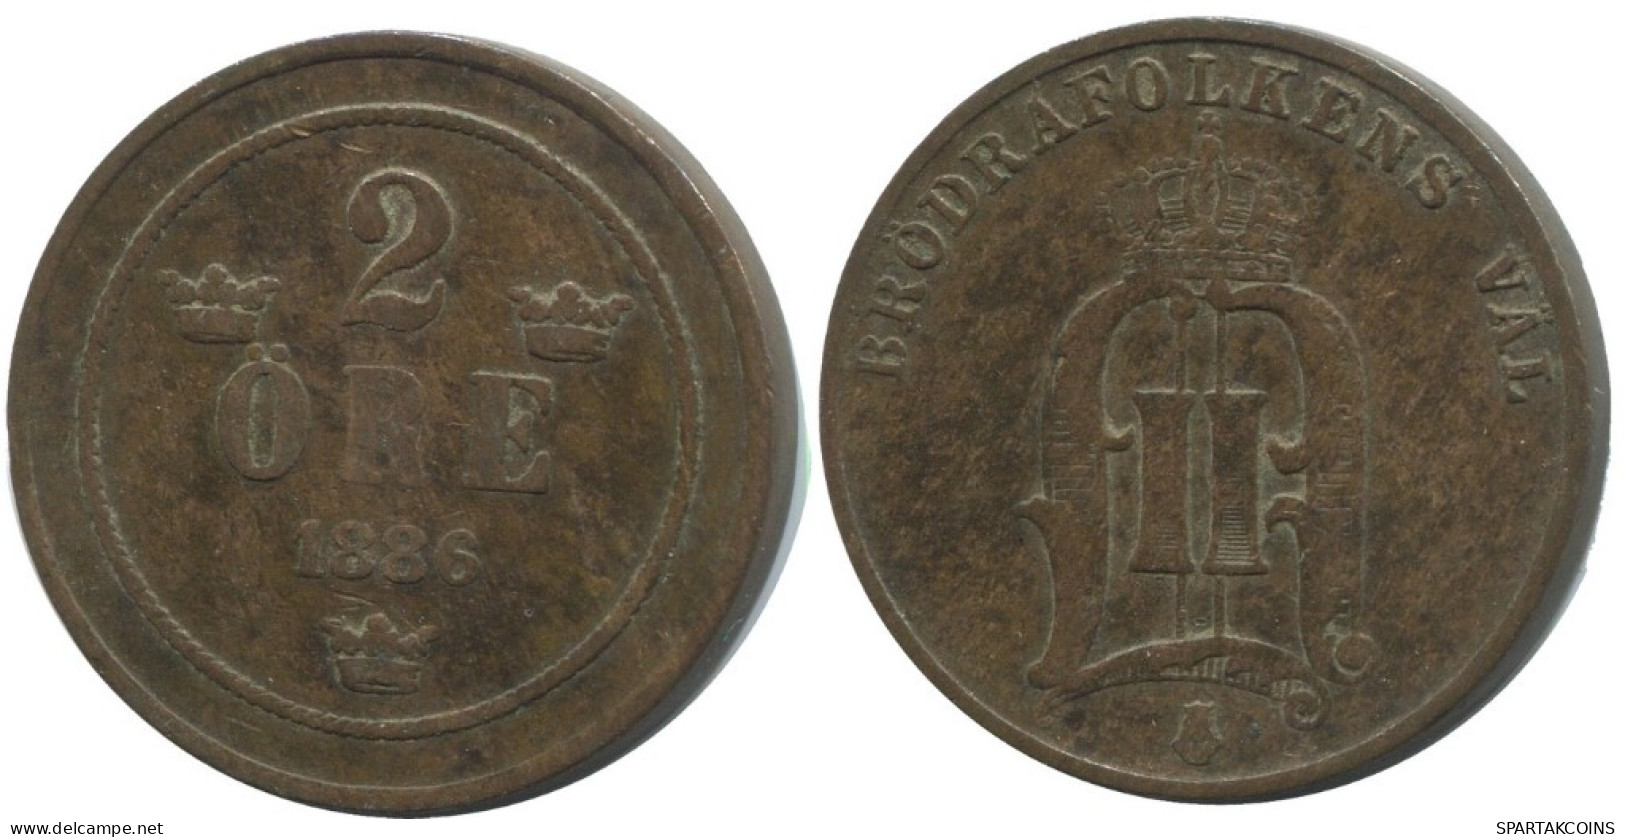 2 ORE 1886 SWEDEN Coin #AC900.2.U.A - Suède